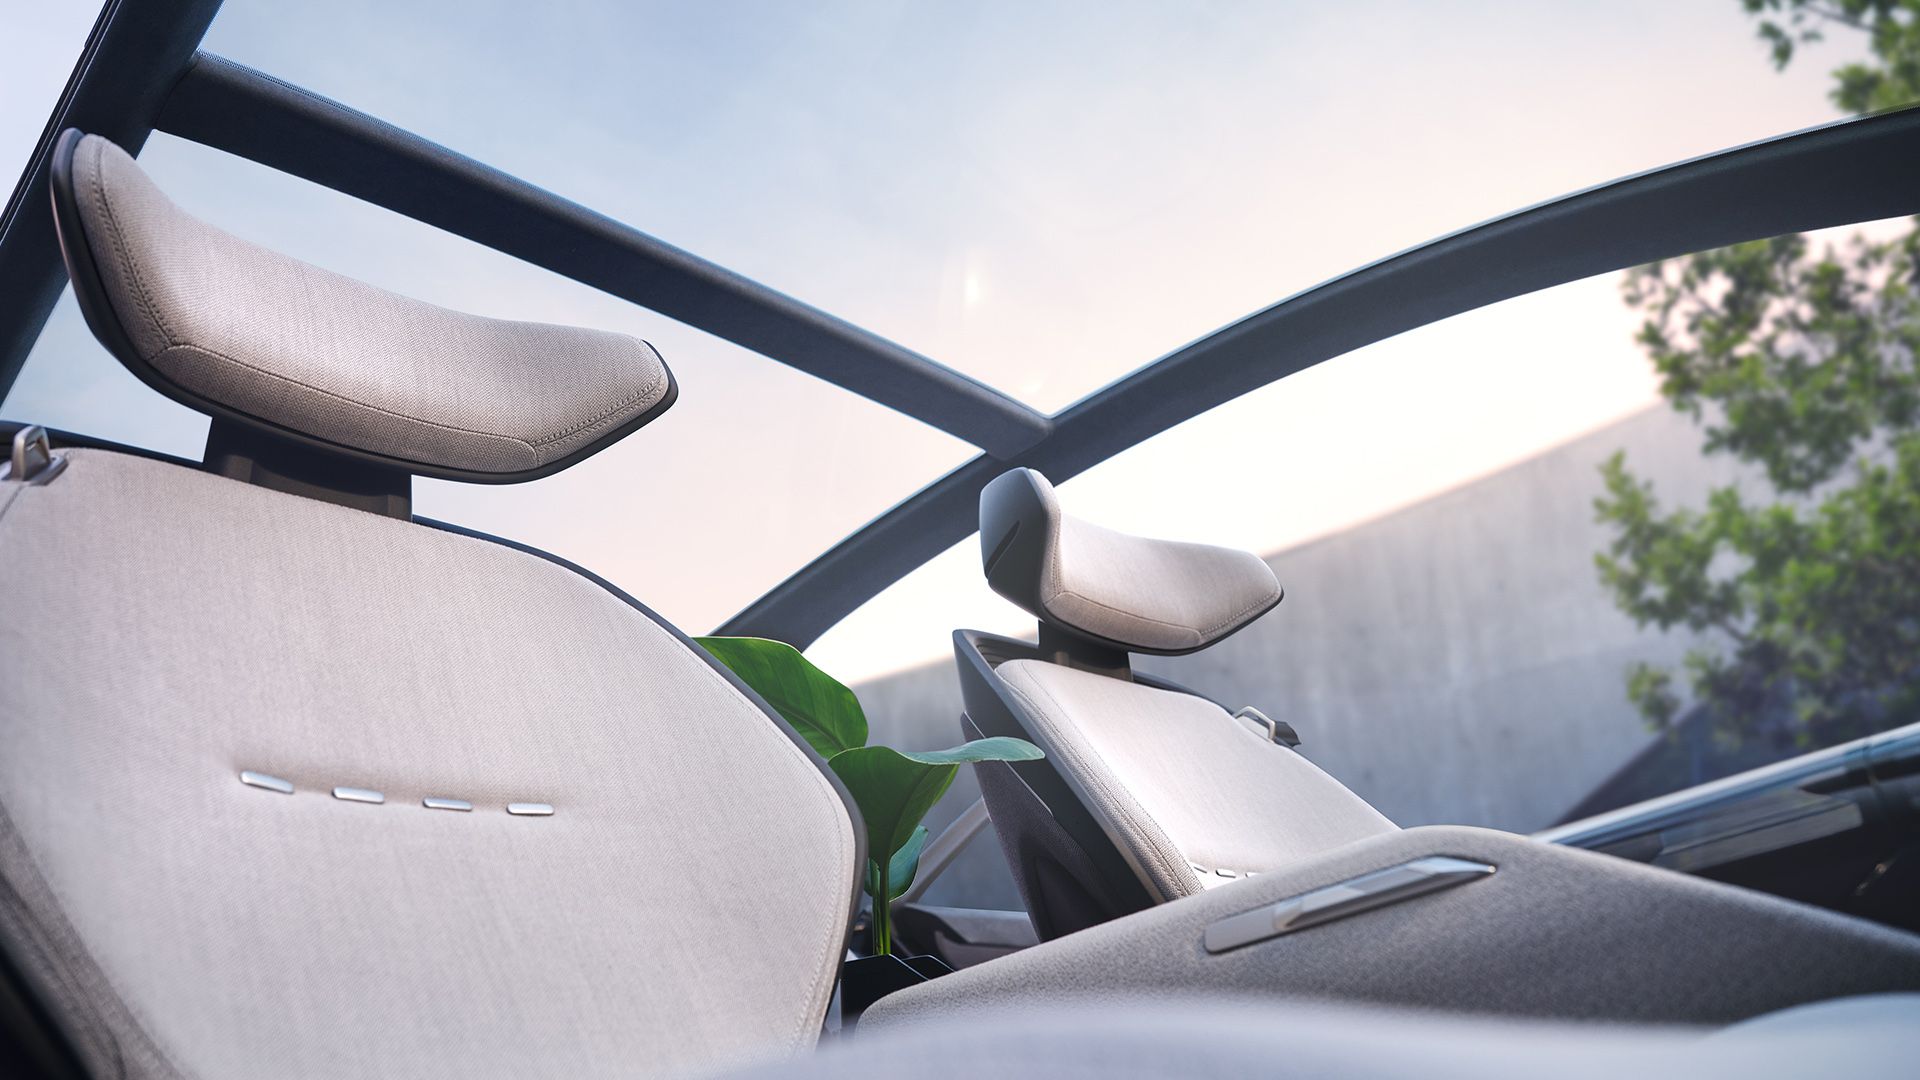 Audi grandsphere concept otomobilin panoramik tavandan iç görünümü.